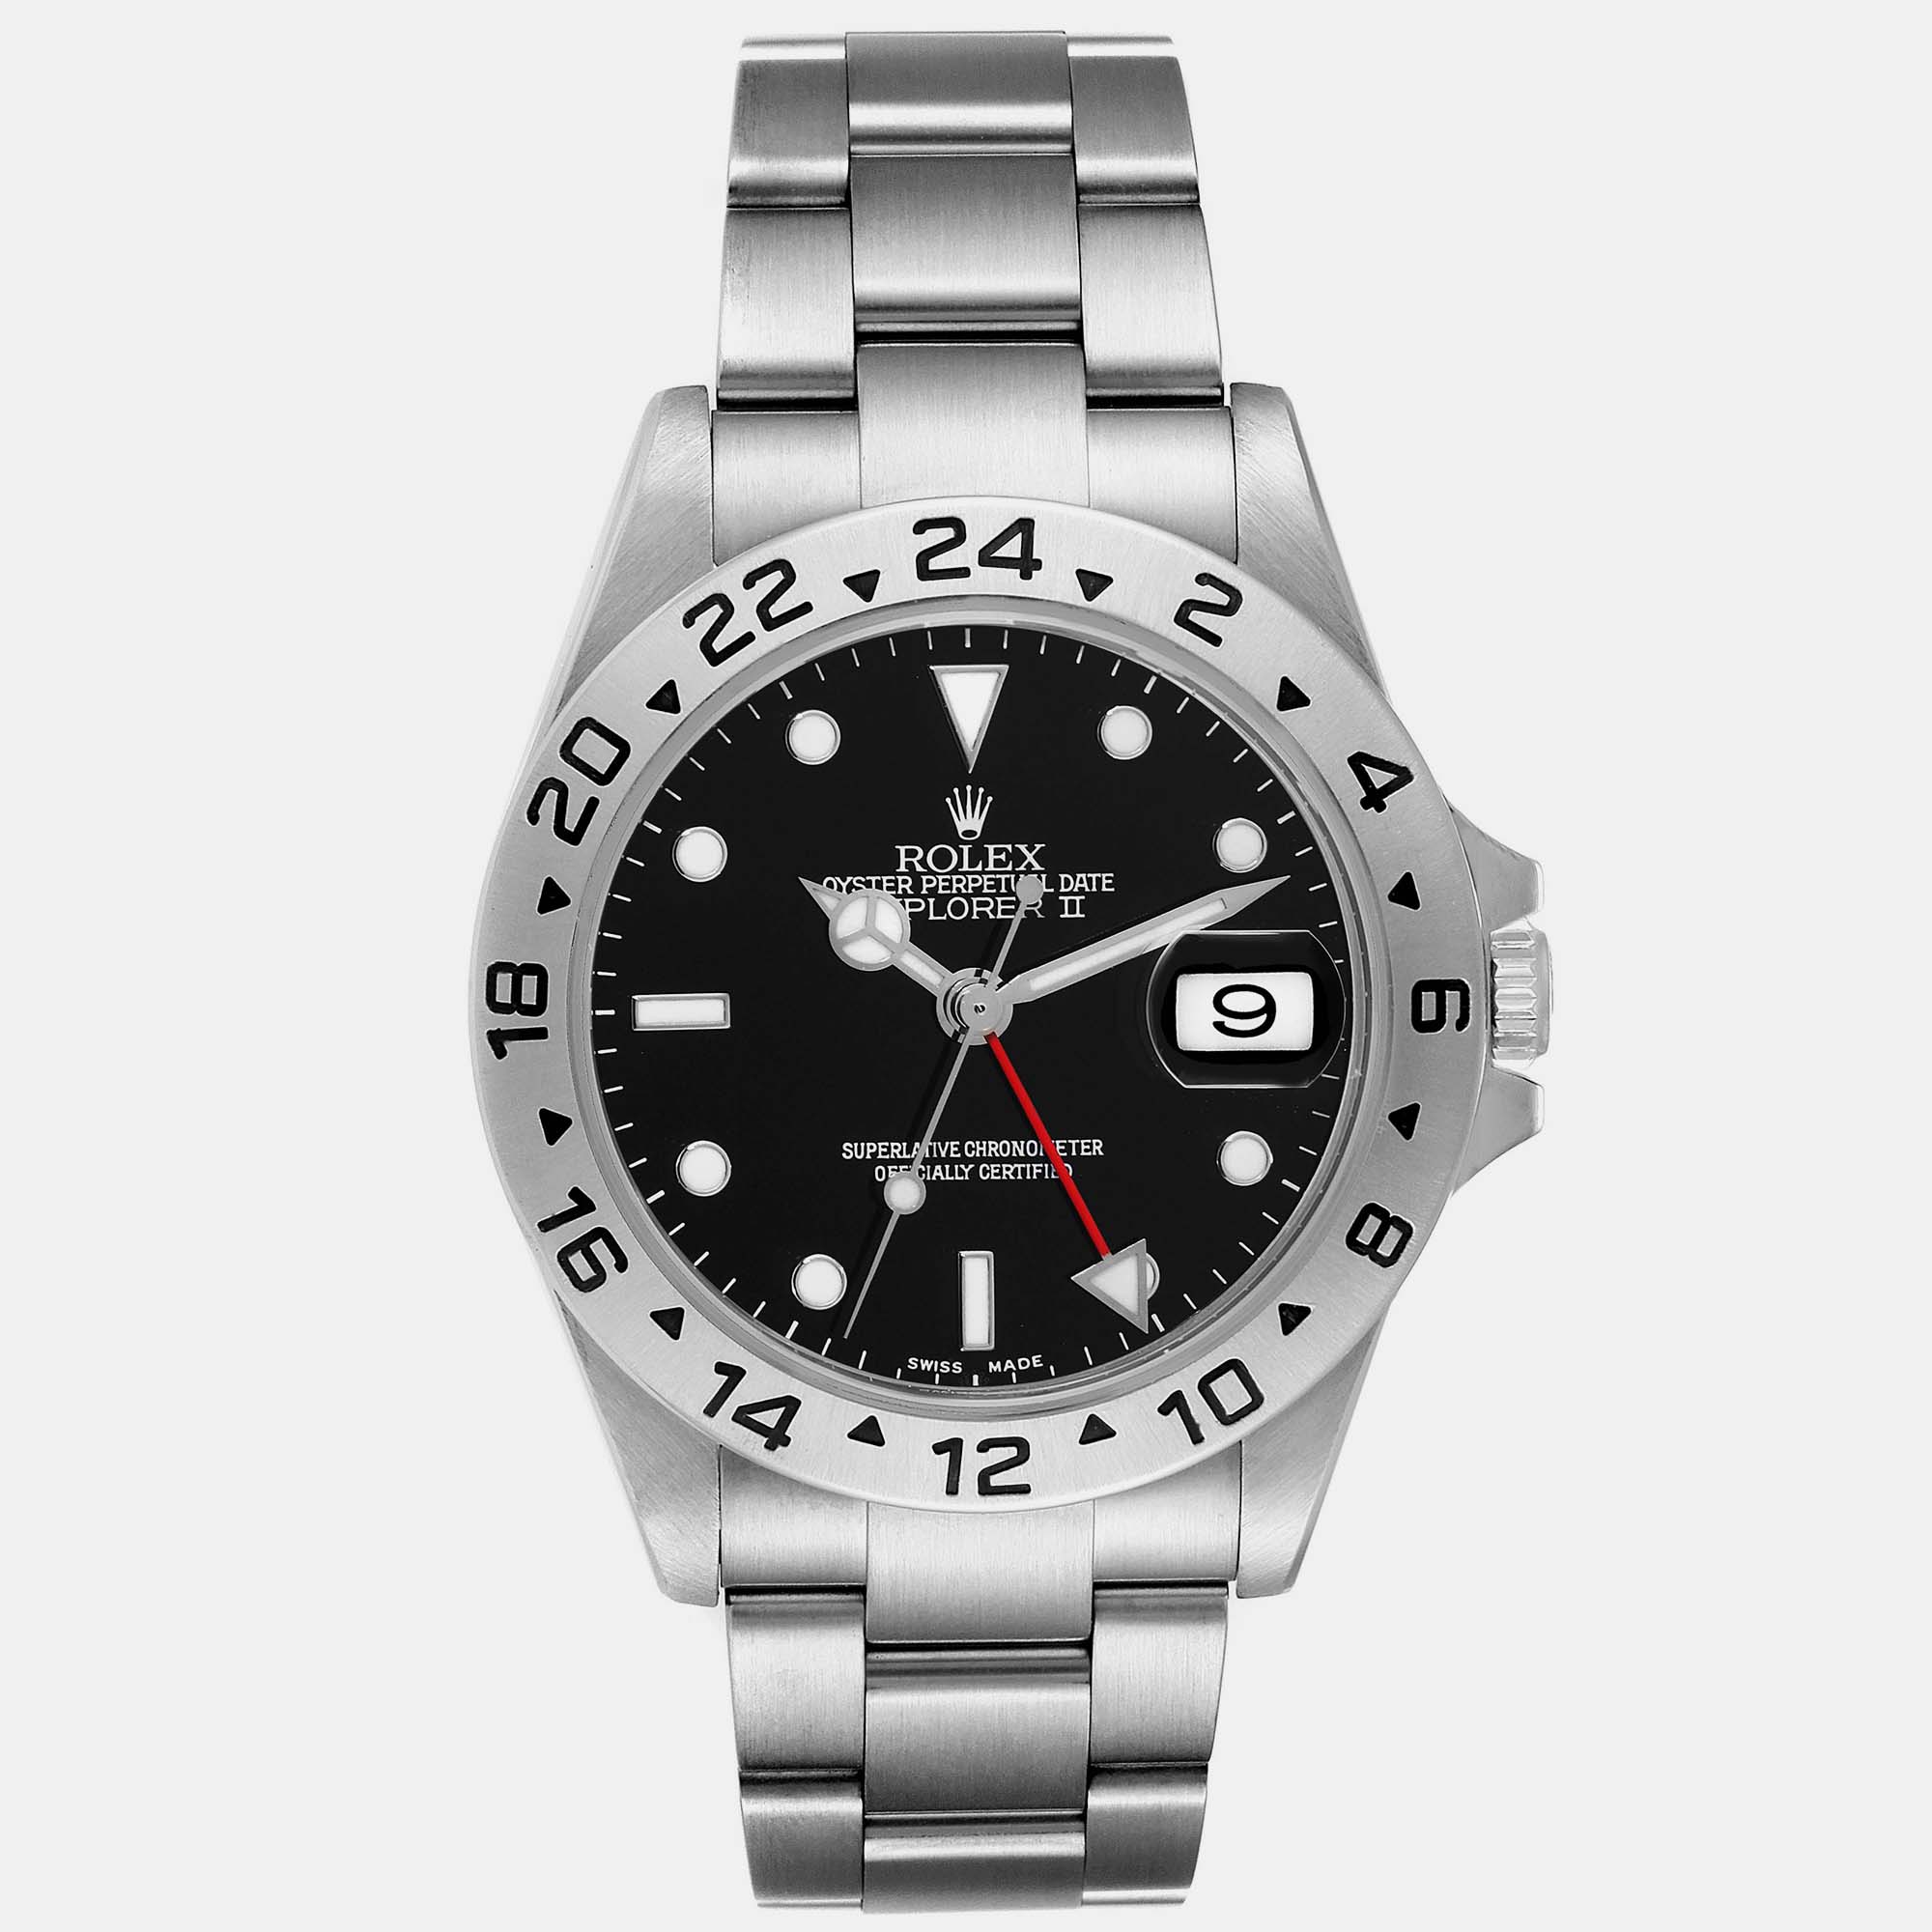 Rolex explorer ii black dial steel men's watch 16570 40 mm